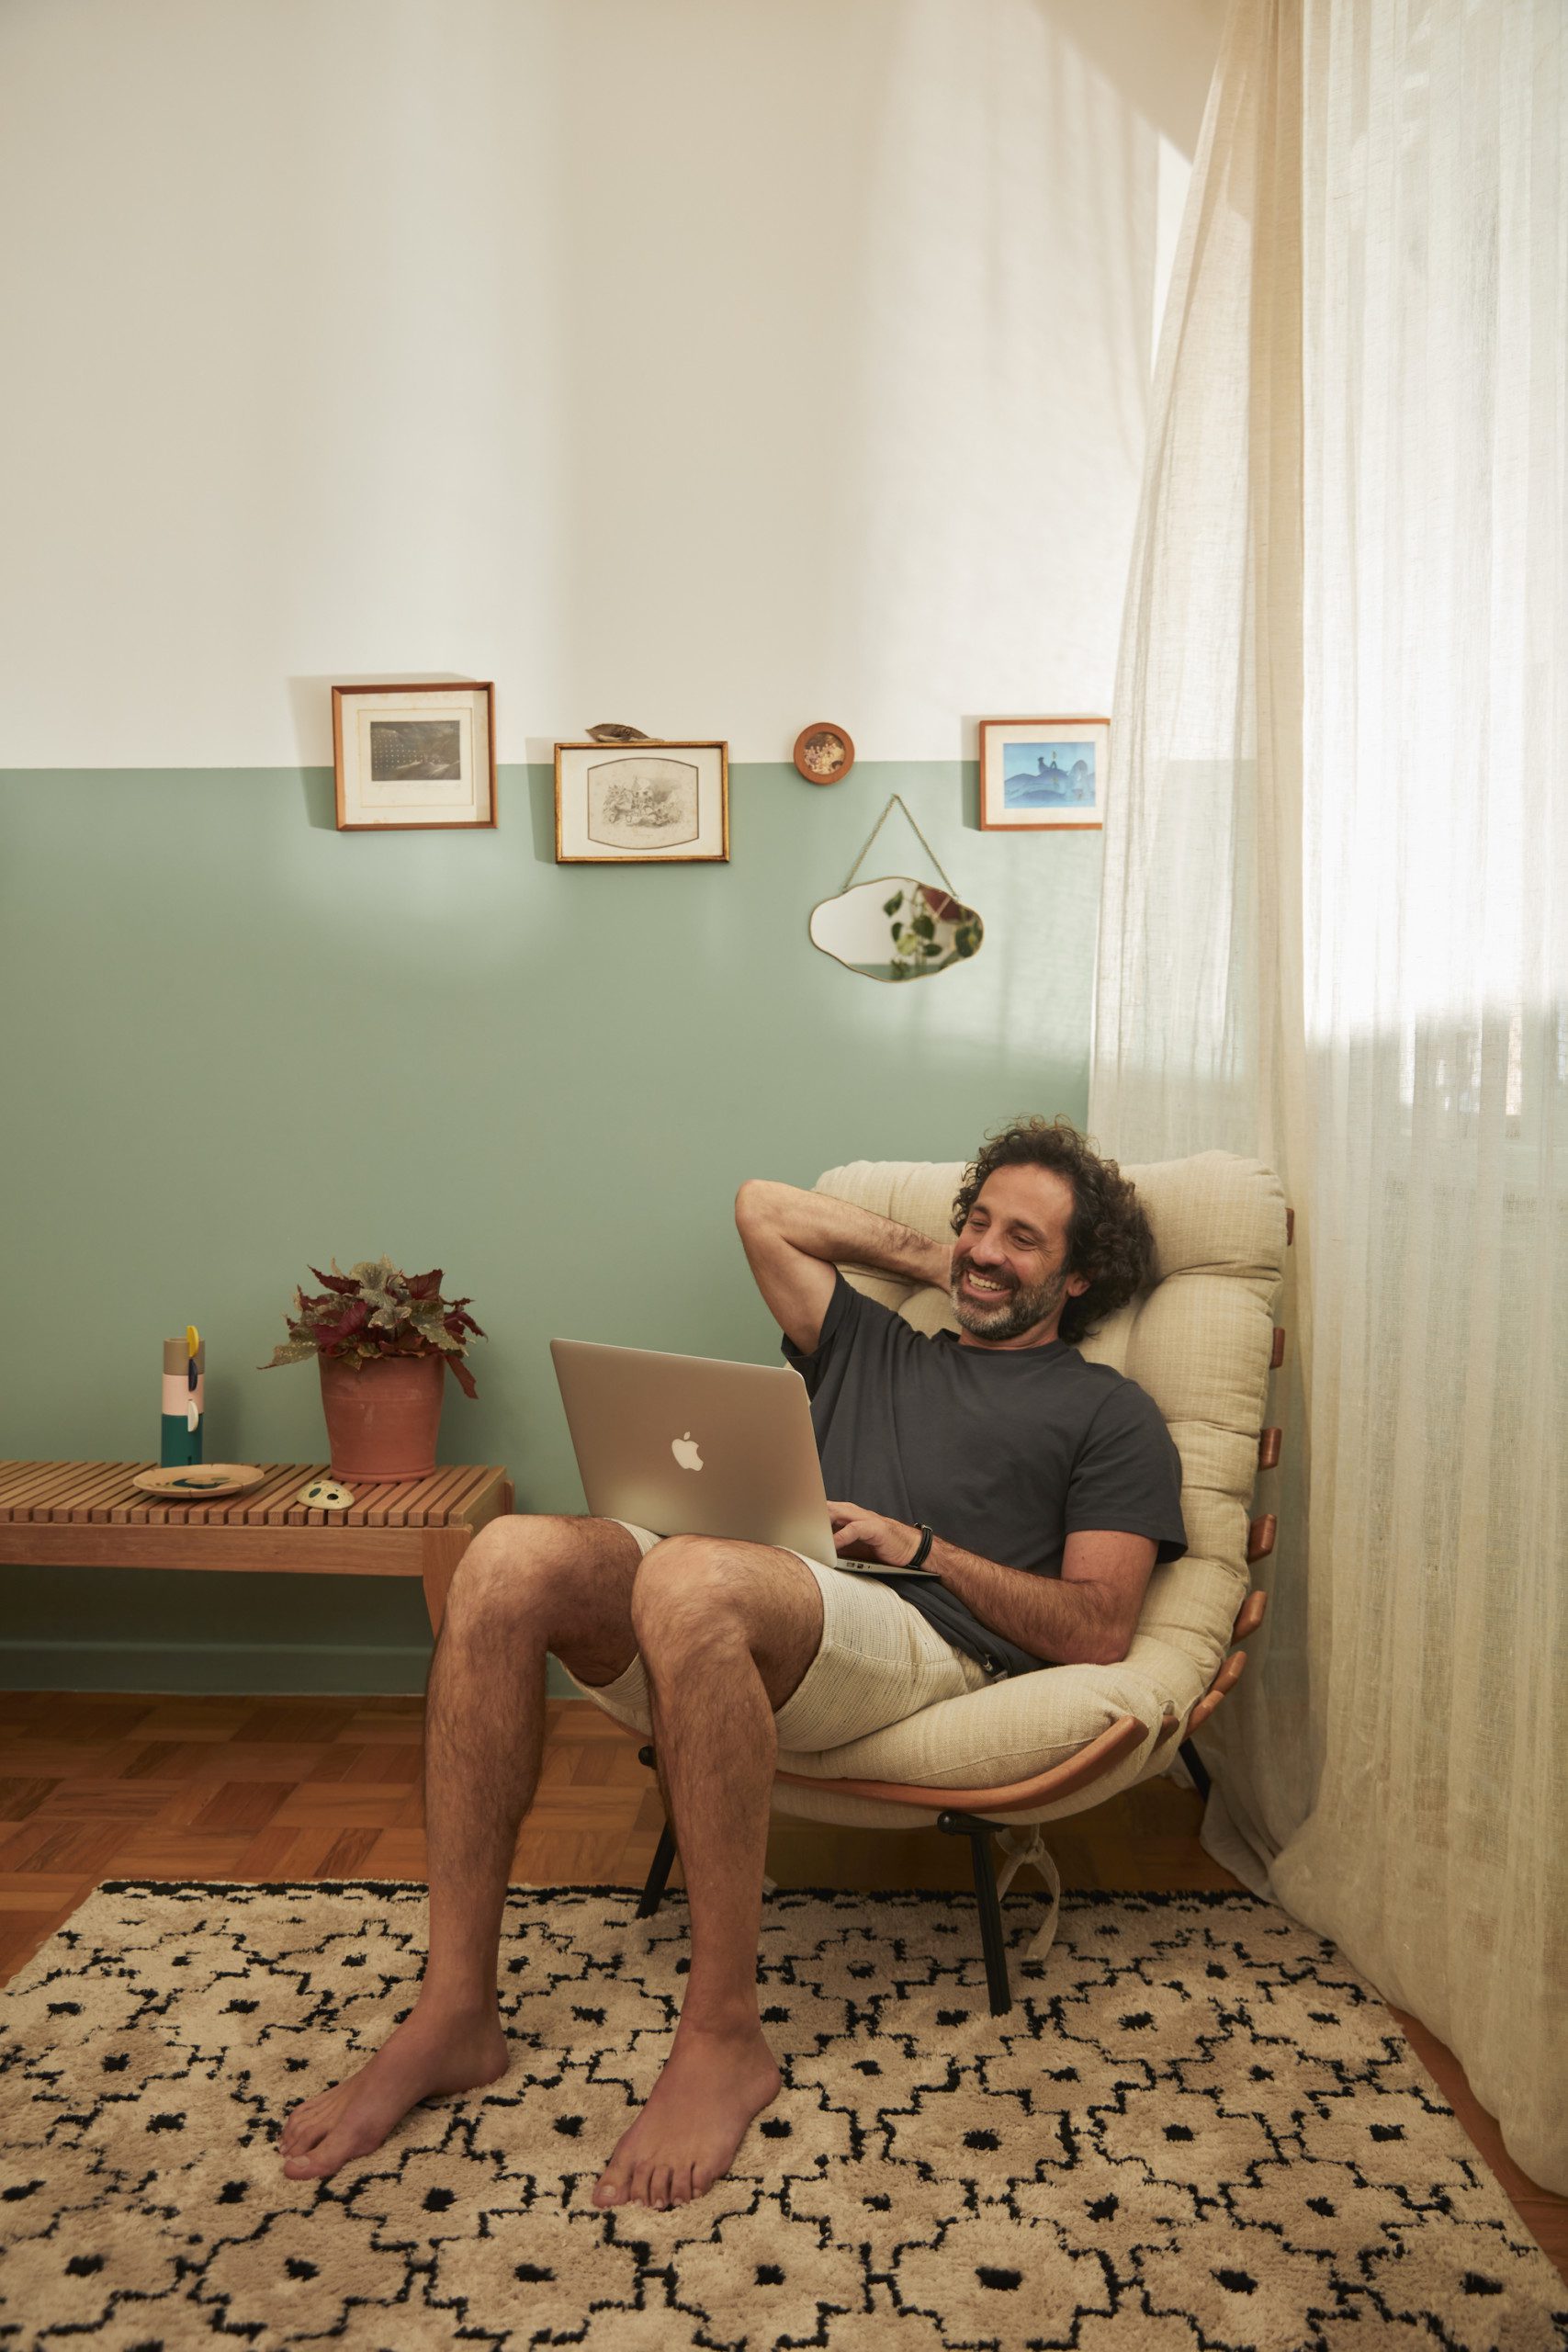 A foto mostra um exemplo de decoração retrô que usa quadros de memórias afetivas na parede. Há também: uma mesa lateral, um homem sentado na poltrona com um notebook, tapete e cortina.